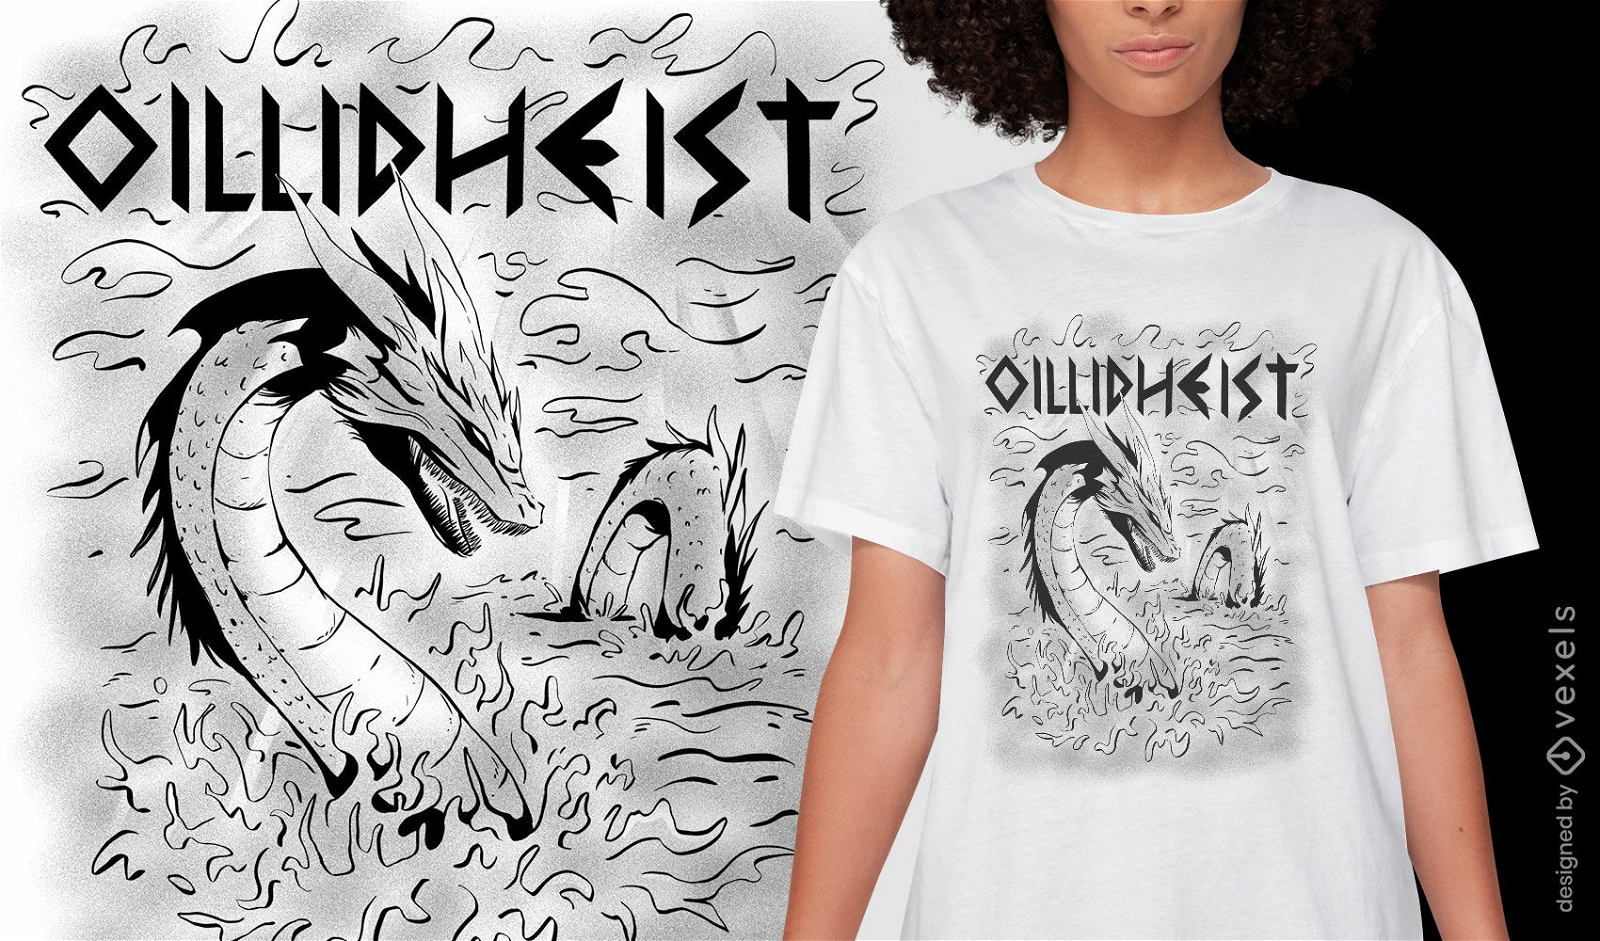 Celtic folklore creature t-shirt design